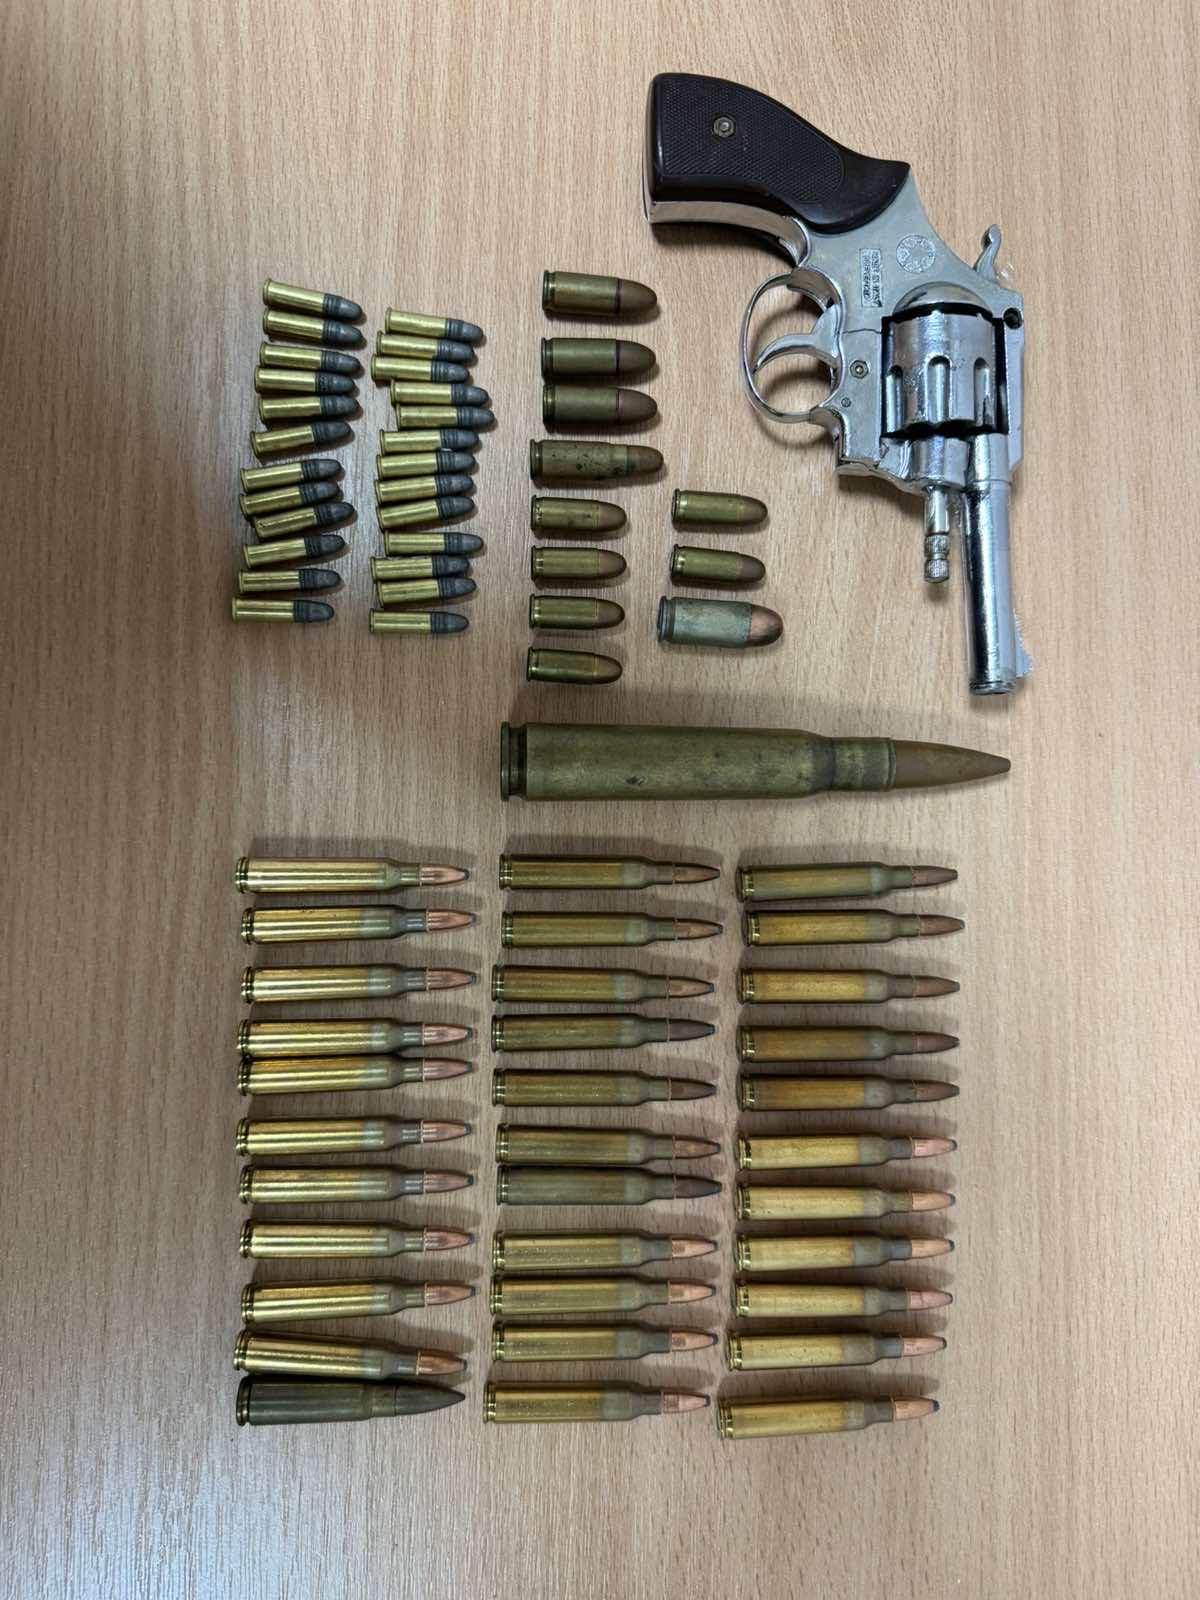  U Nikšiću uhapšena osoba zbog ulične prodaje narkotika, pretresom  pronađen i pištolj i municija 